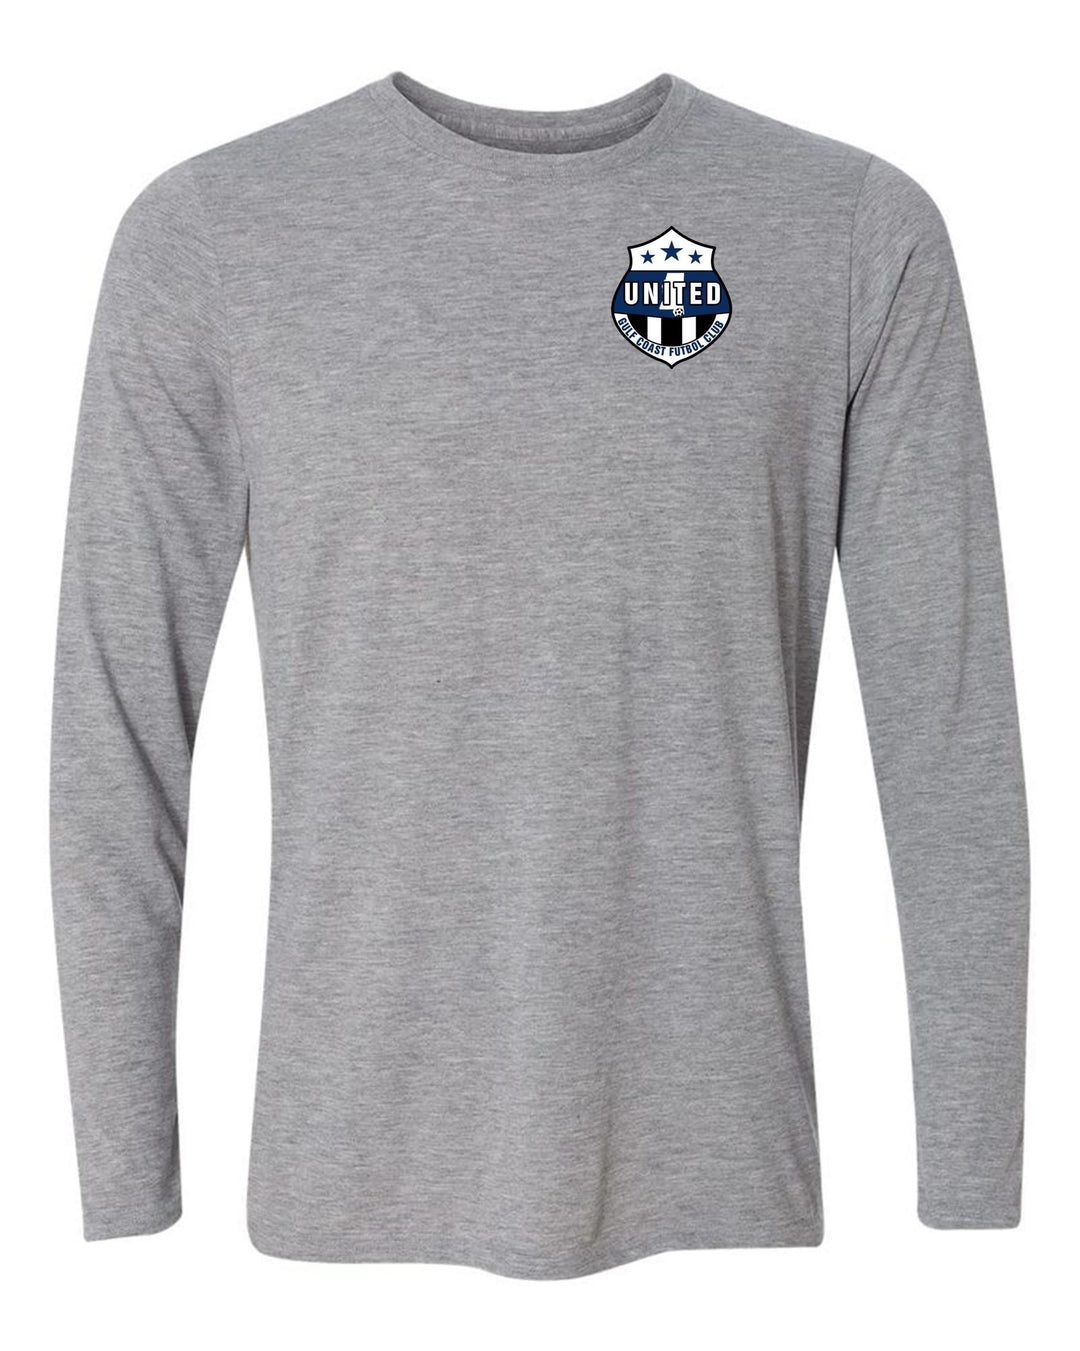 Gulf Coast United LS T-shirt - Royal or Sport Grey Gulf Coast United Spiritwear SPORT GREY WOMENS MEDIUM - Third Coast Soccer